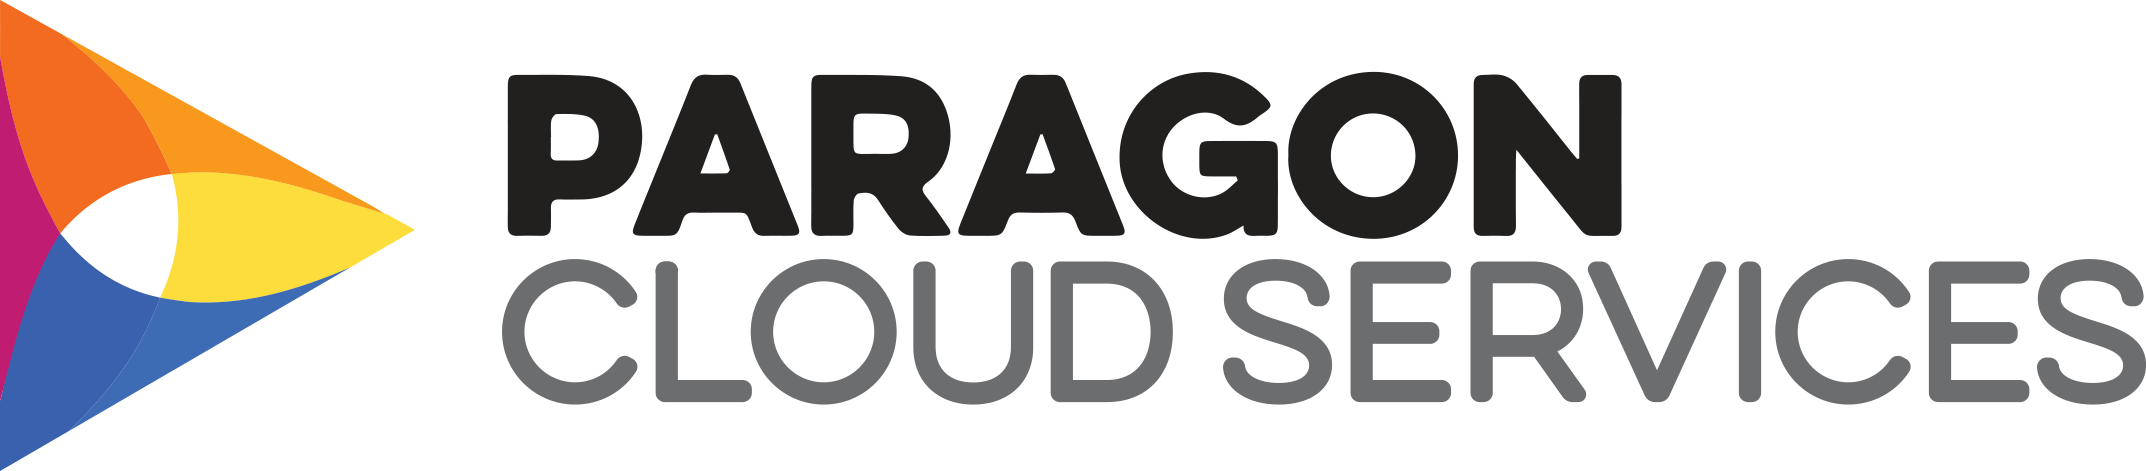 Paragon_Cloud_Services_rgb